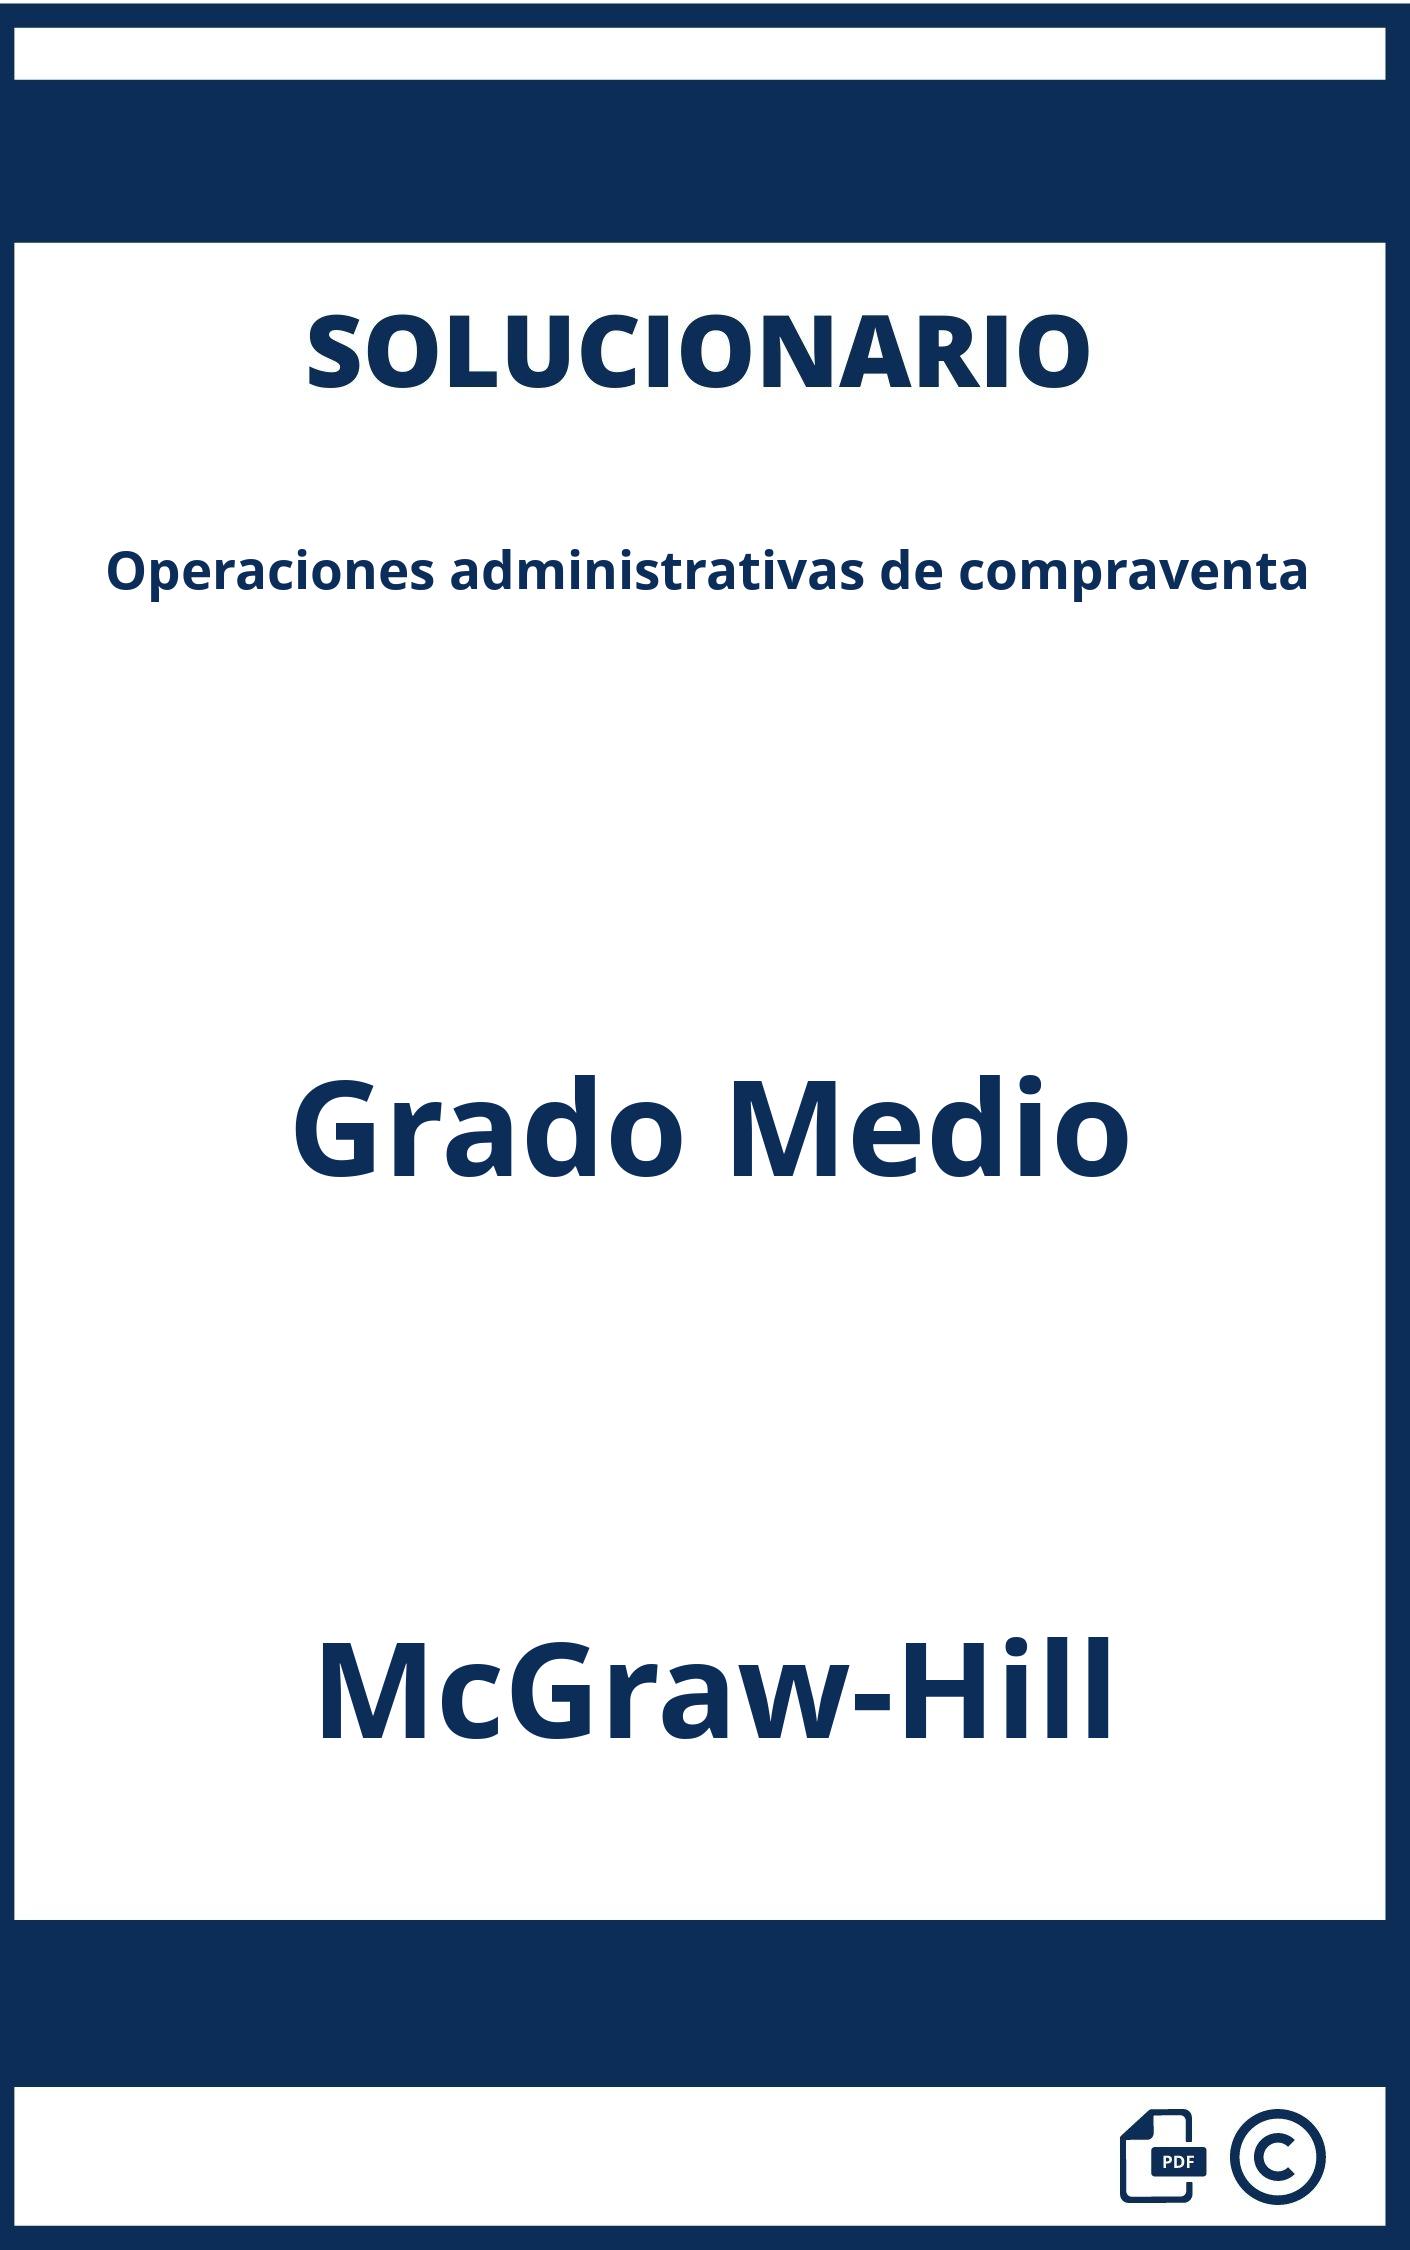 Solucionario Operaciones administrativas de compraventa Grado Medio McGraw-Hill